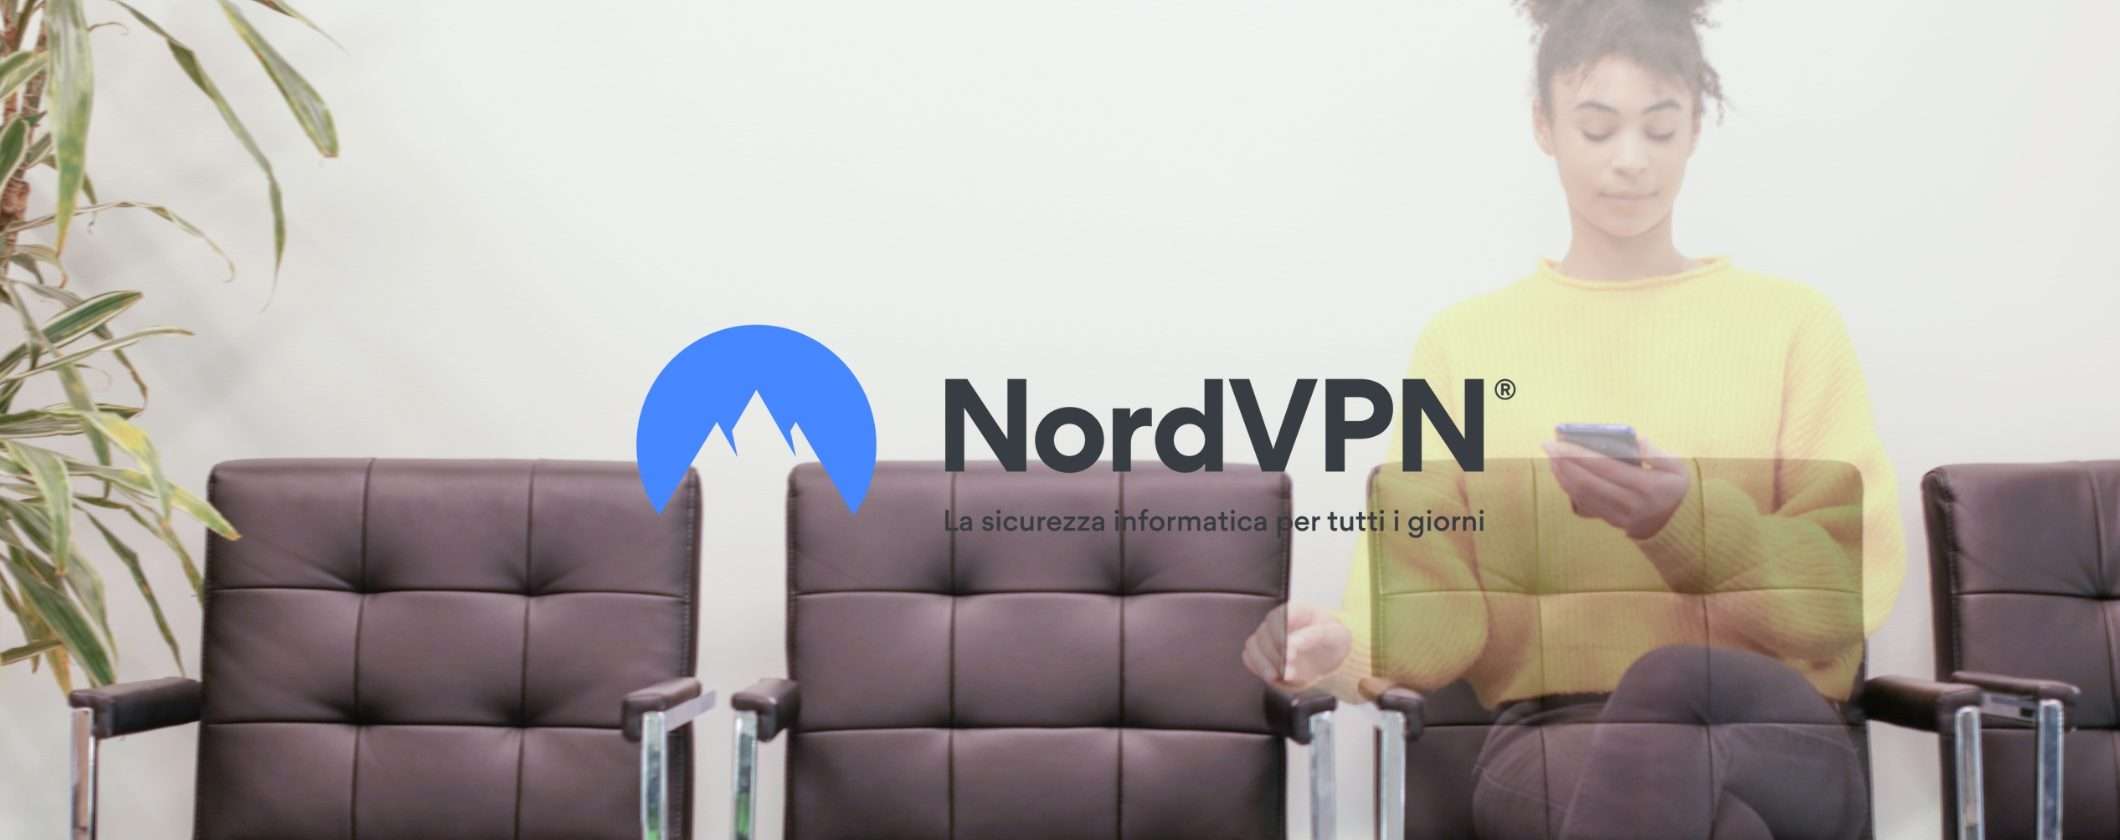 NordVPN: scopri come diventare invisibile online